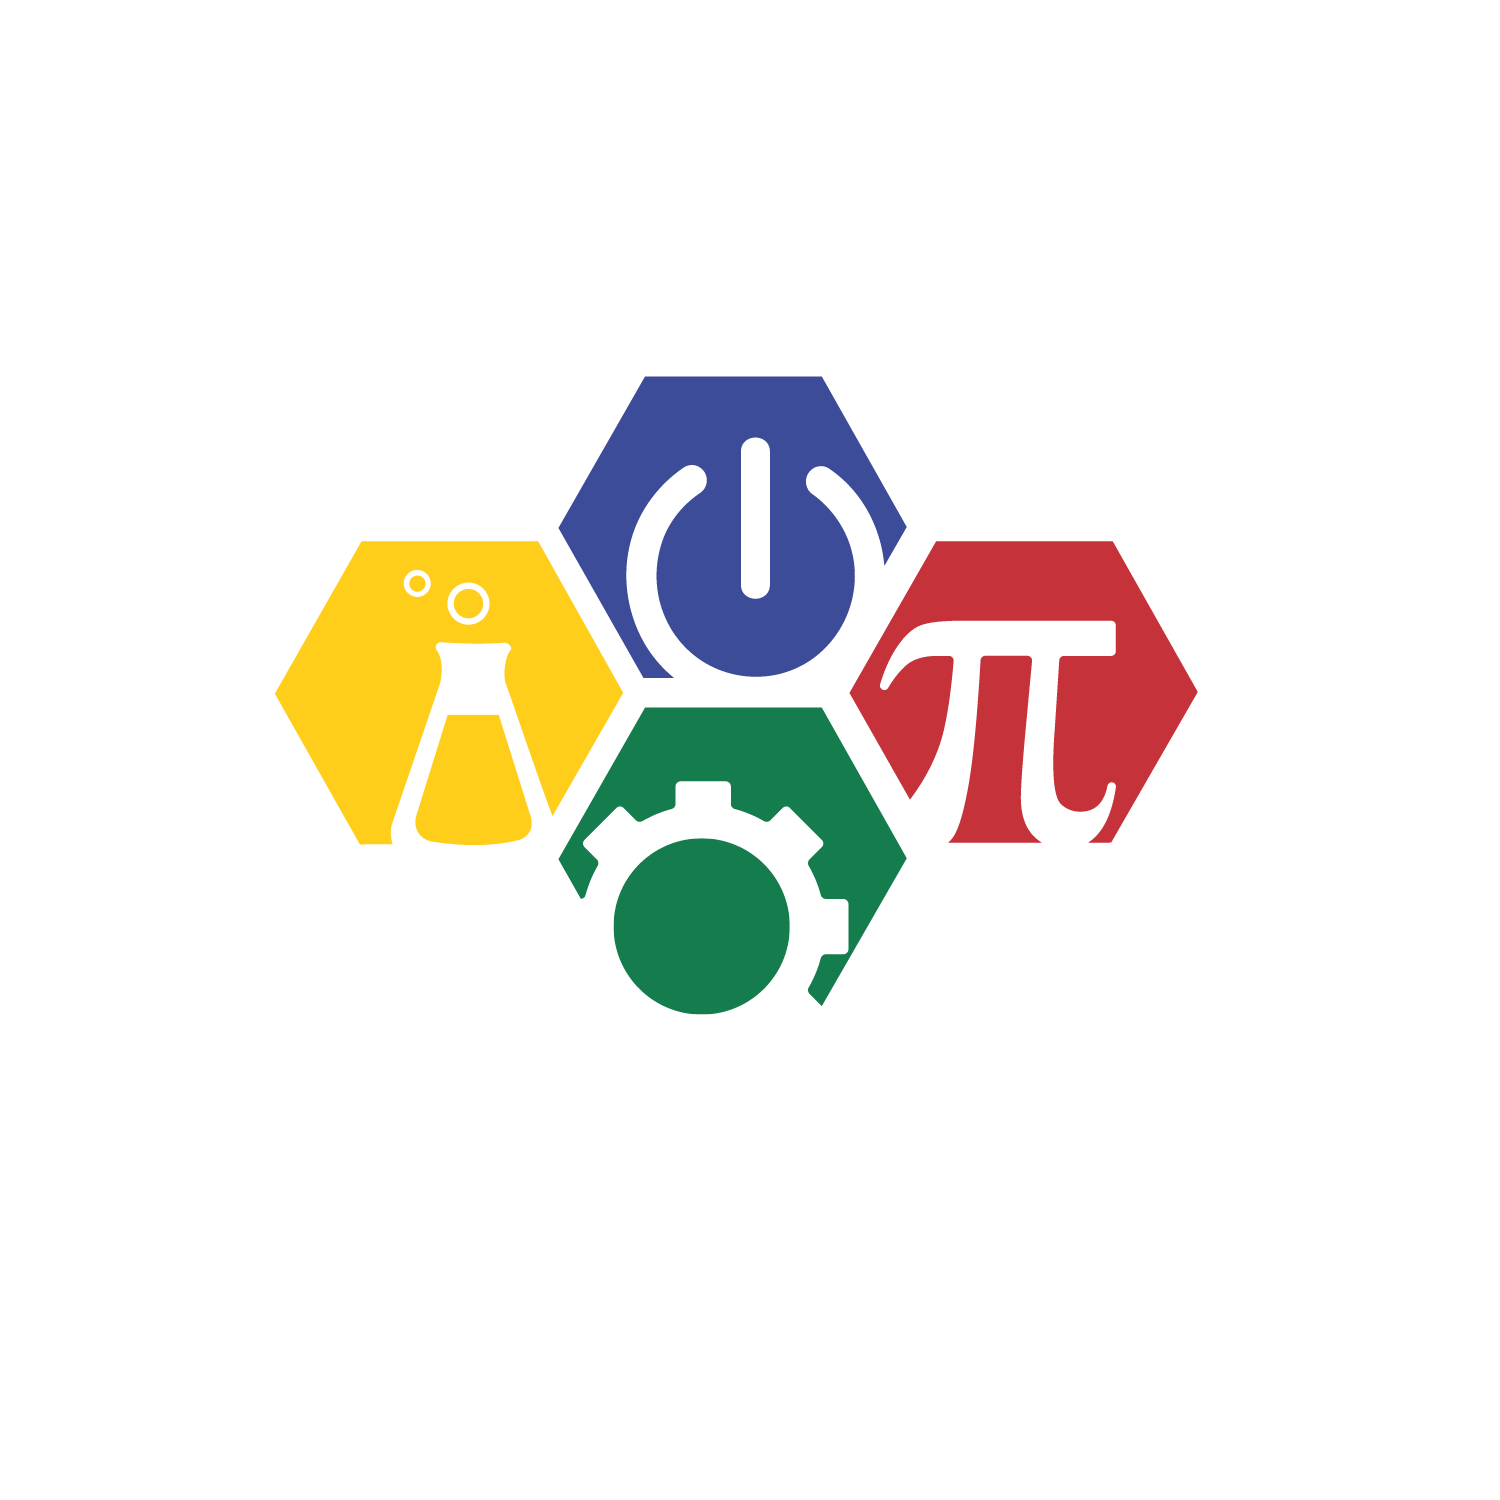 CREATE for STEM Institute logo